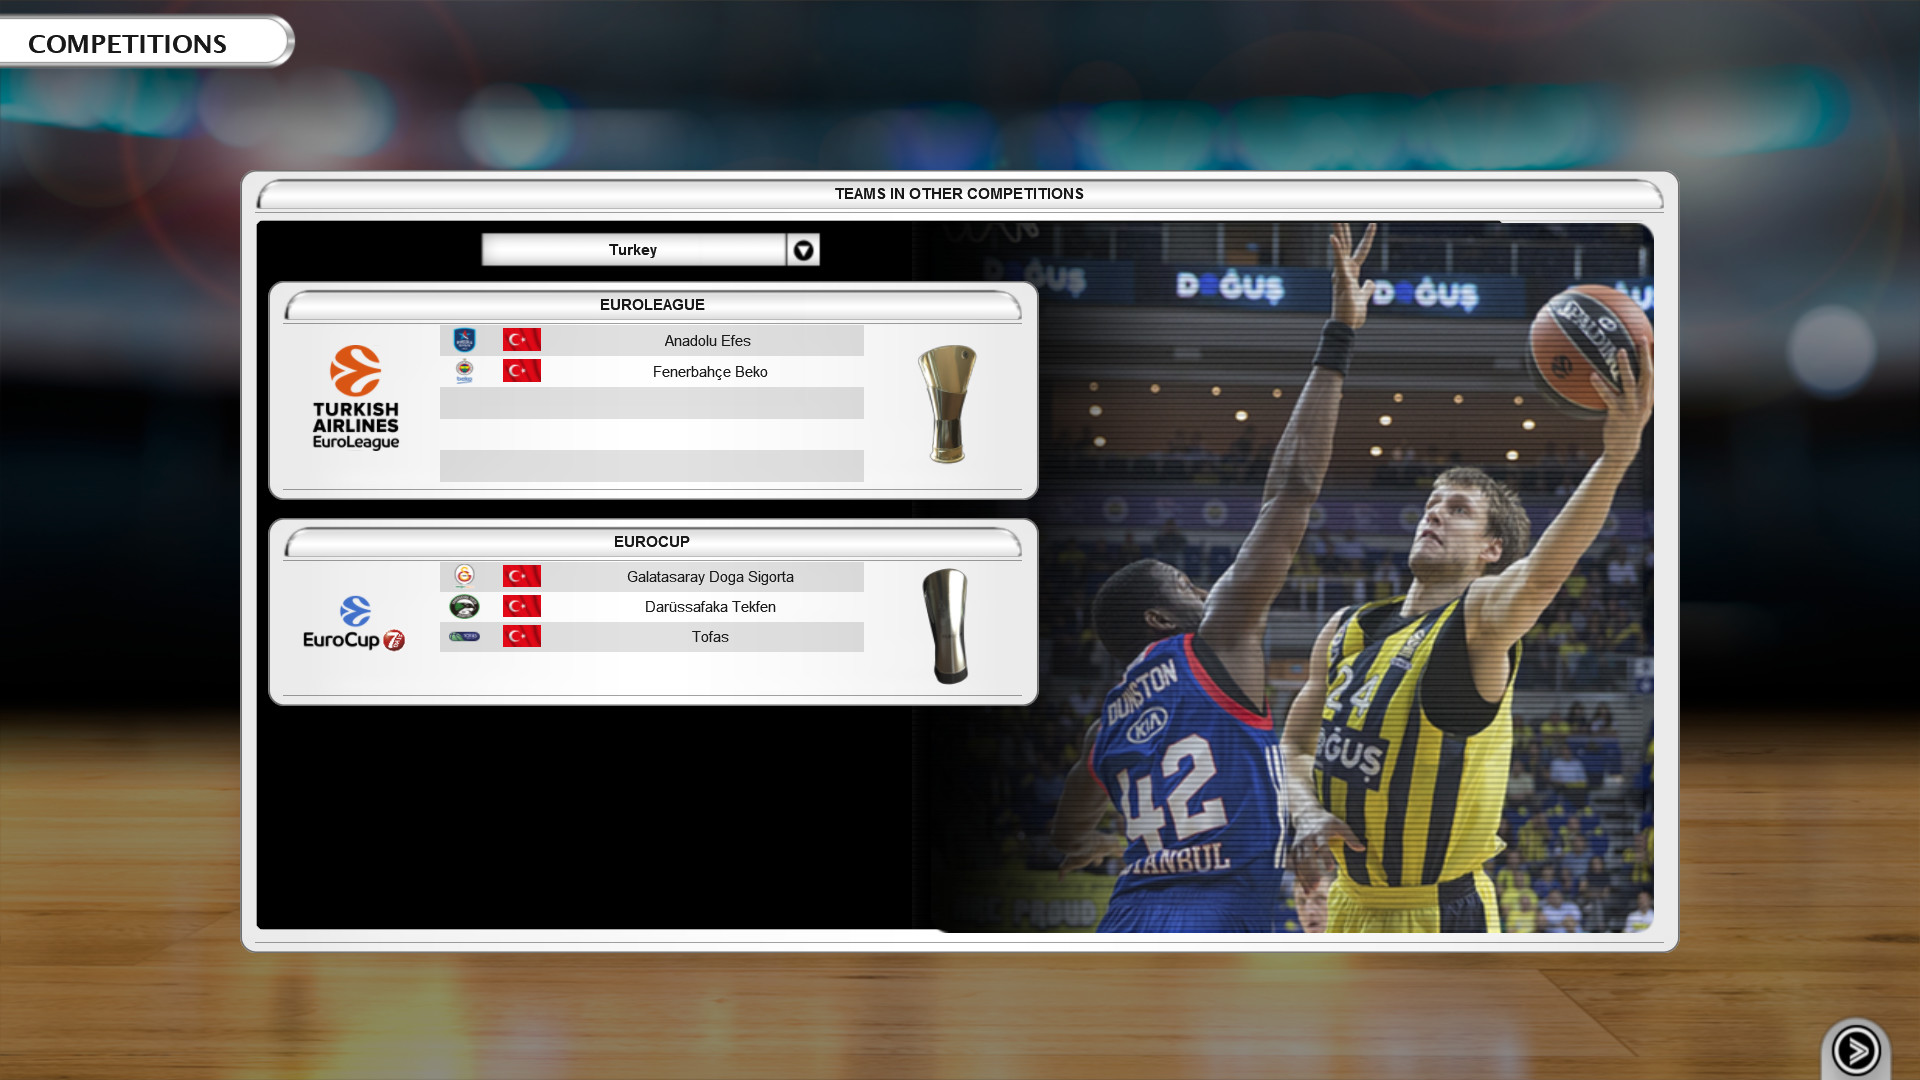 International Basketball Manager screenshot